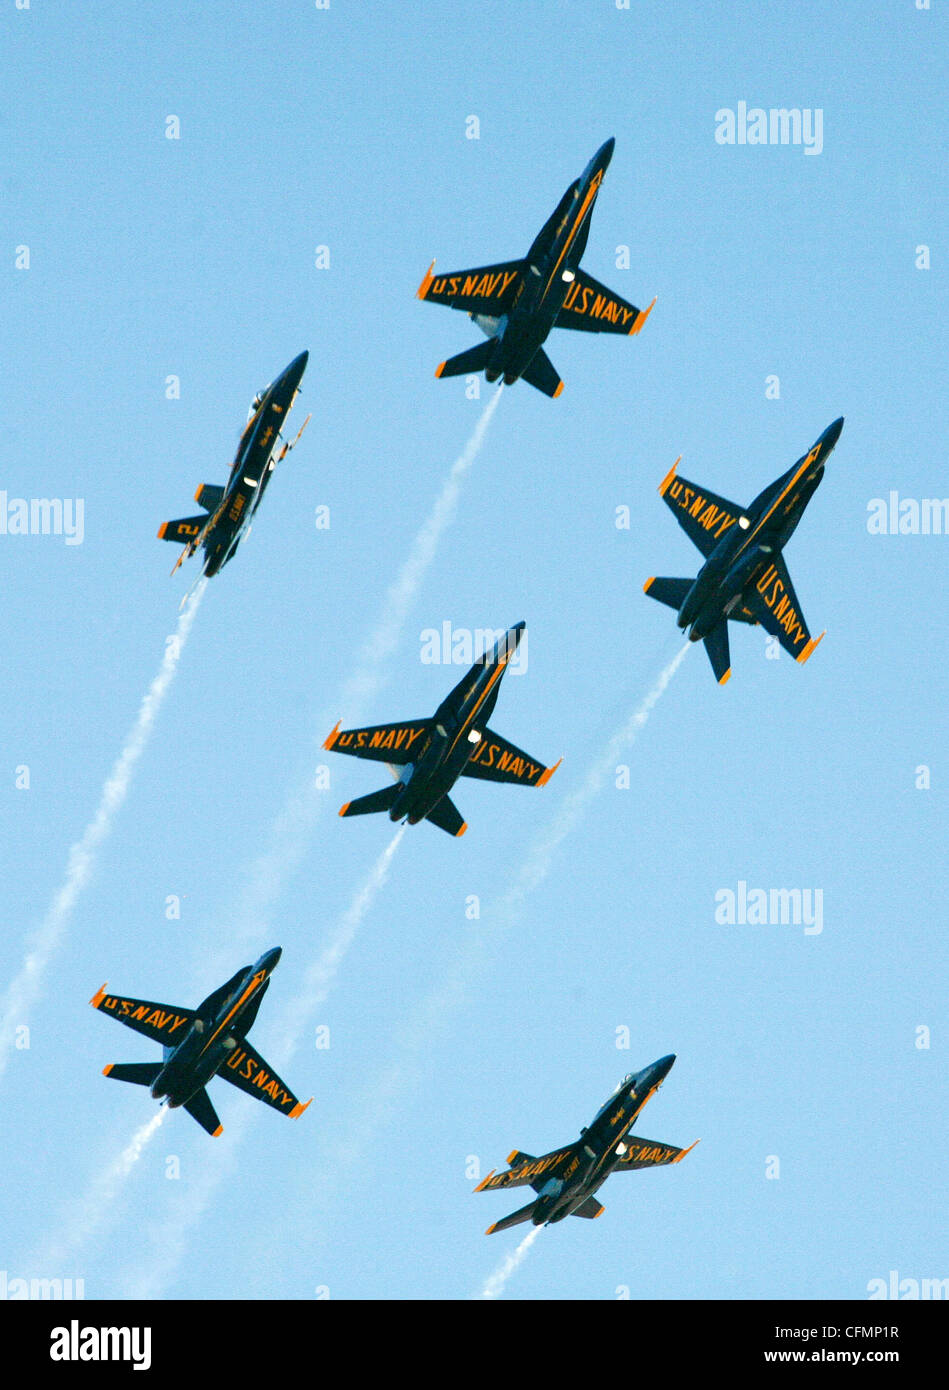 Die US Navy Blue Angels split ihre Ausbildung über Marine Corps Air Station Miramar während einer Leistung im Miramar Air Show Oktober 2, 2011. Die Blue Angels feiern ihr 65-jähriges Jubiläum von schillernden air show Massen und salutierte 100 Jahre Naval Aviation. Stockfoto